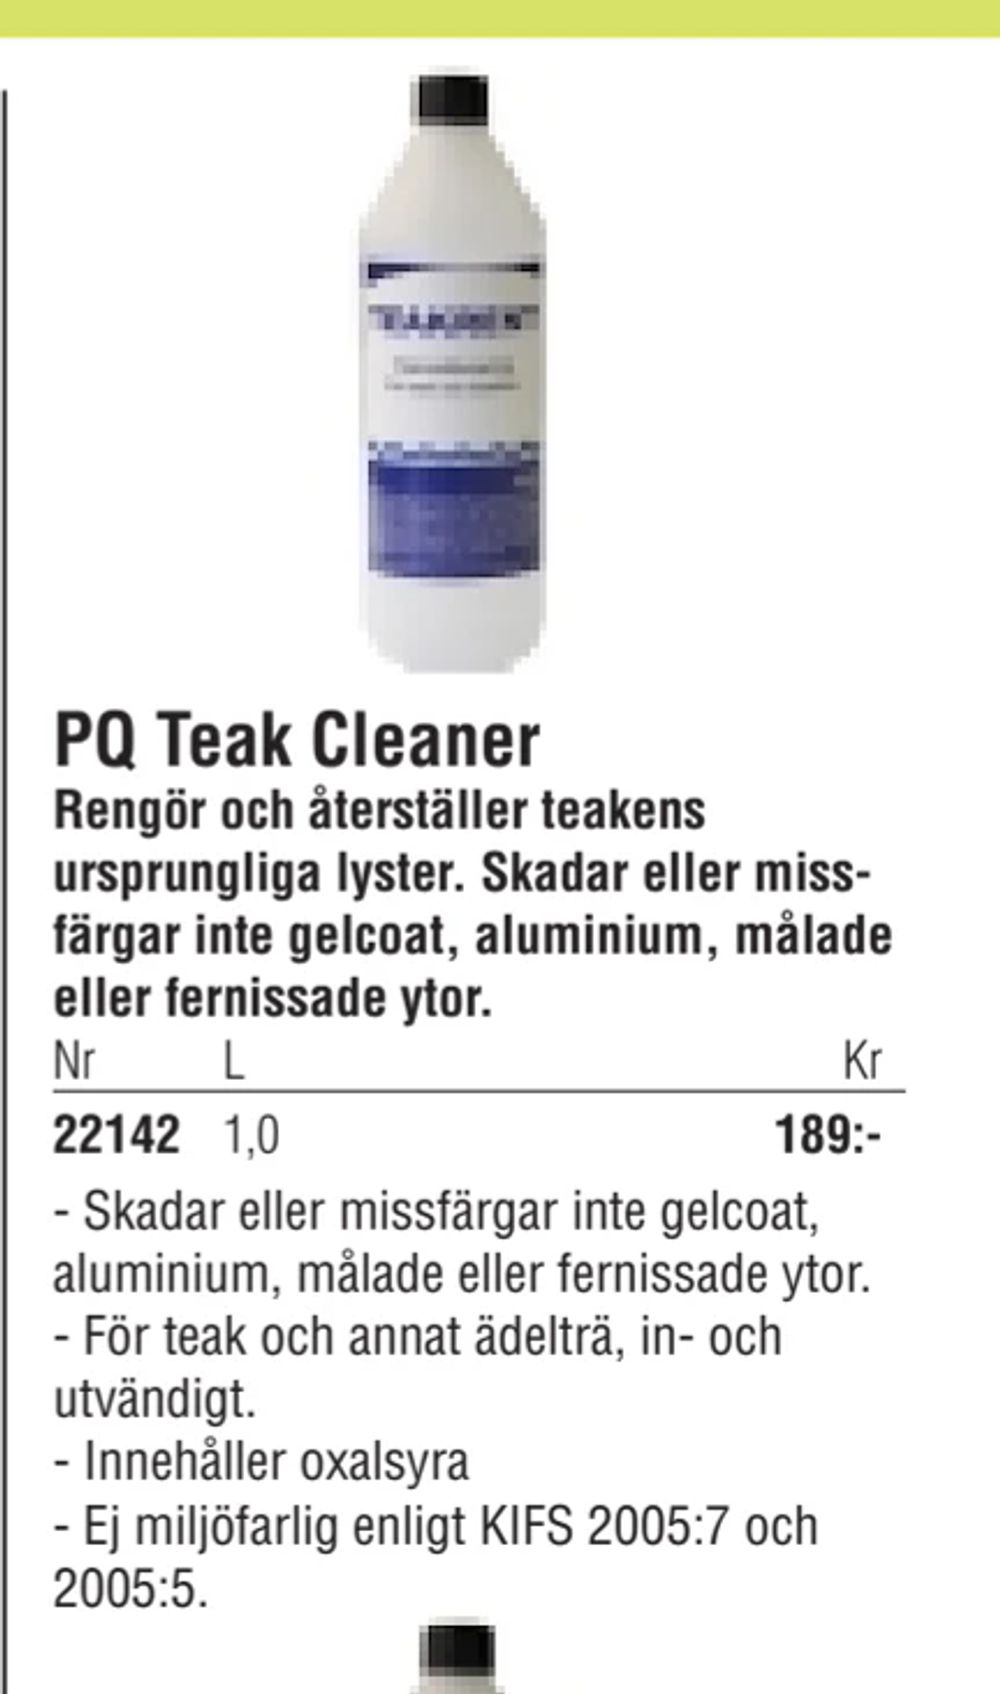 Erbjudanden på PQ Teak Cleaner från Erlandsons Brygga för 189 kr